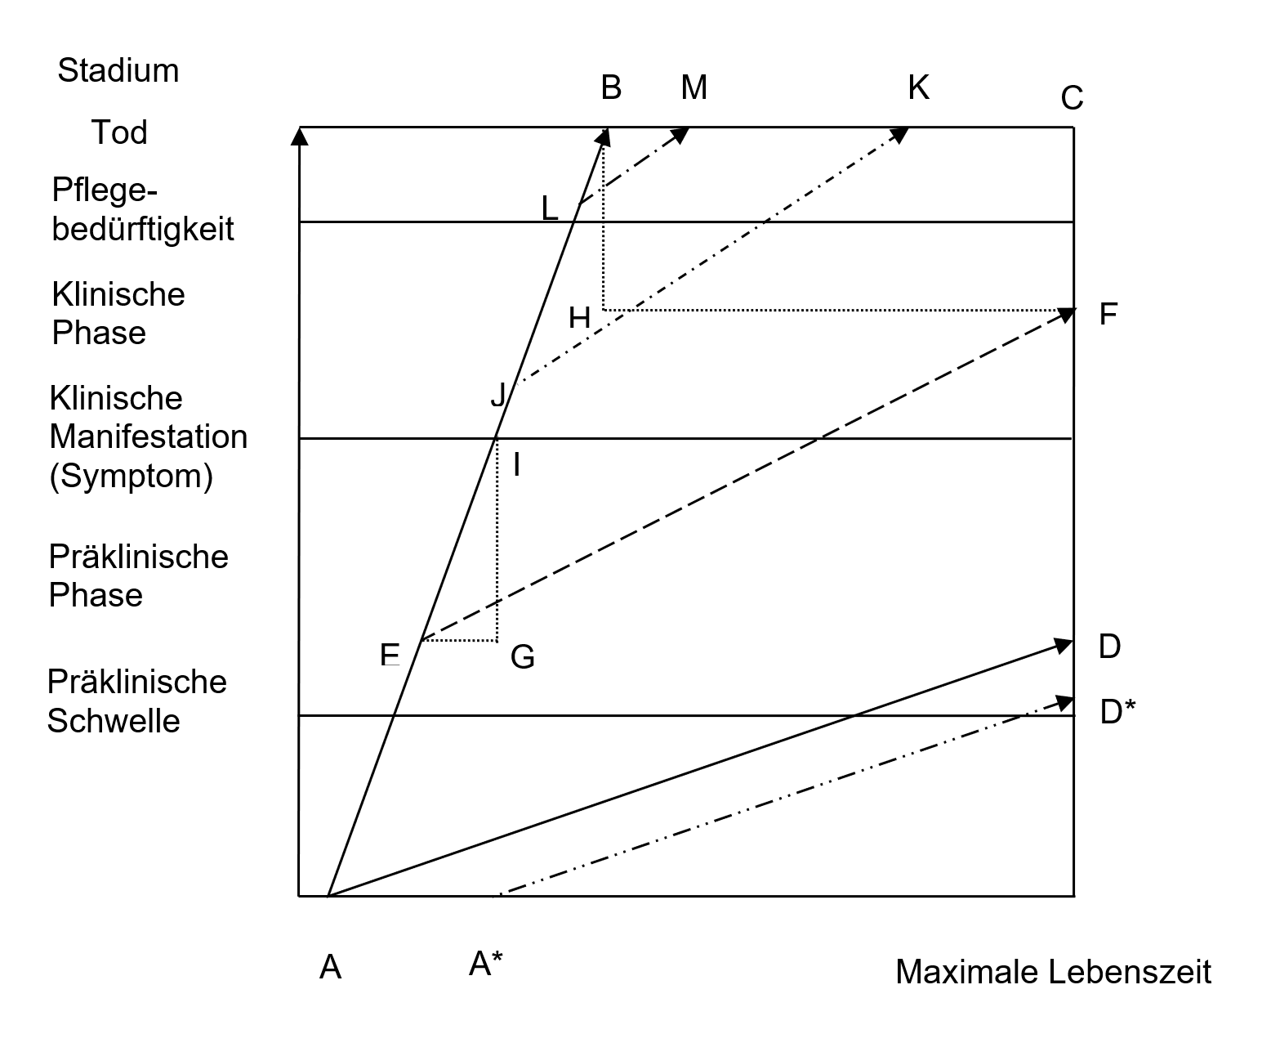 Abb. 1: Kenngrößen der Prävention am Beispiel eines Fallverlaufs (modifiziert nach Flatten, Berghof & Meye 1988)